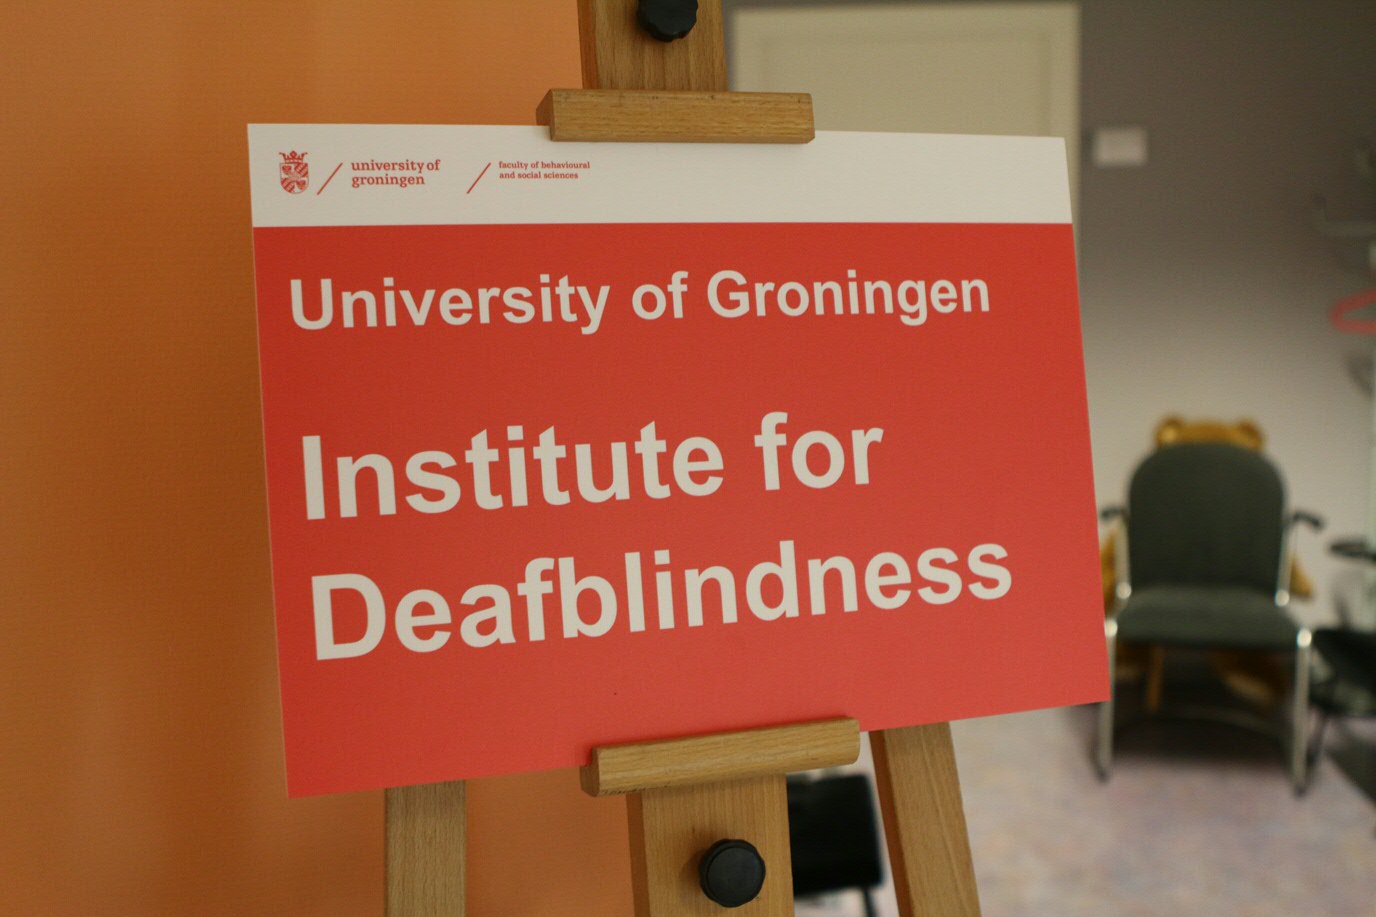 Opening University of Groningen Institute for Deafblindness